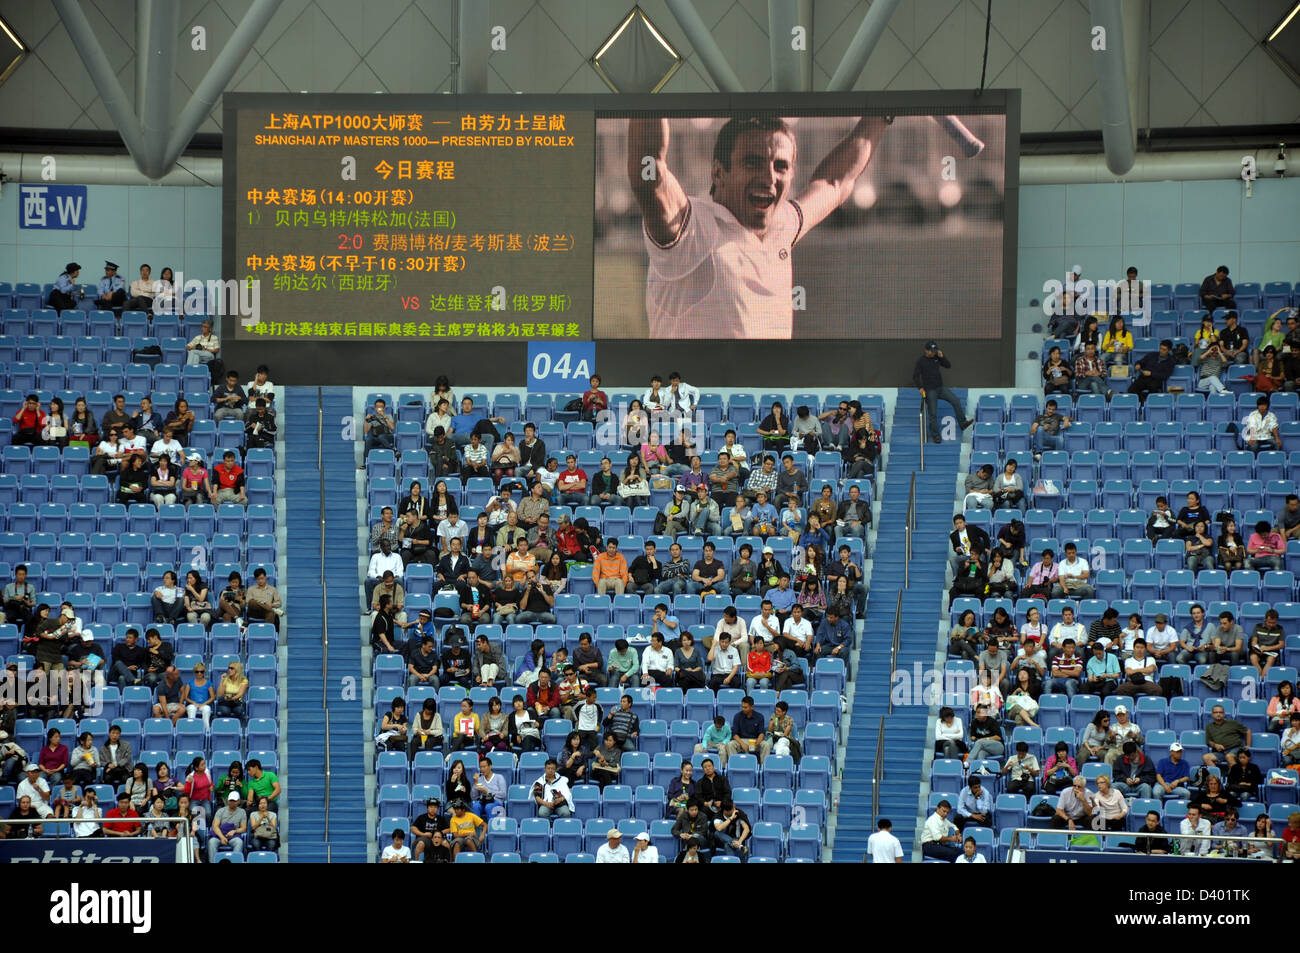 Nikolay Davydenko gewinnt das Shanghai Tennis Masters Finale im Zi Zhong Stadium in 2009 - Shanghai, China Stockfoto